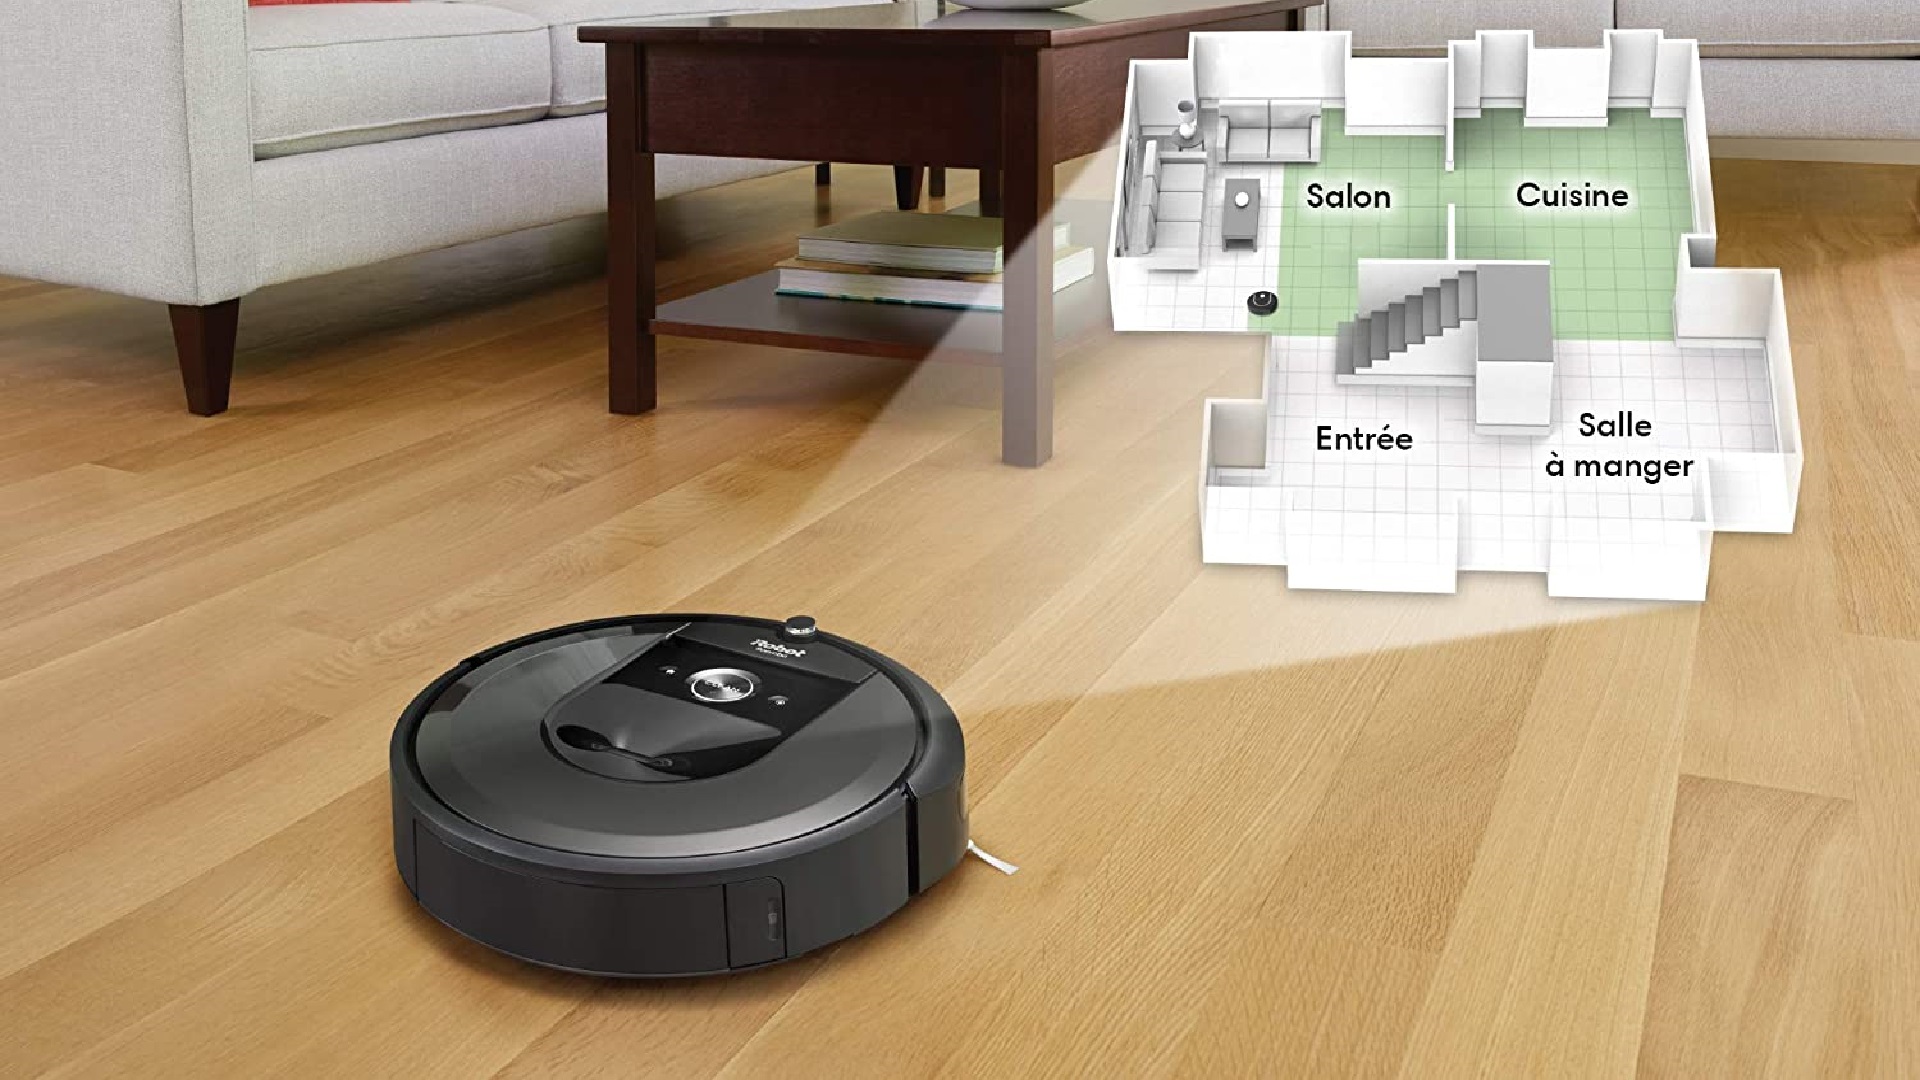 Les soldes sont terminés, mais l'aspirateur robot Roomba I7 est